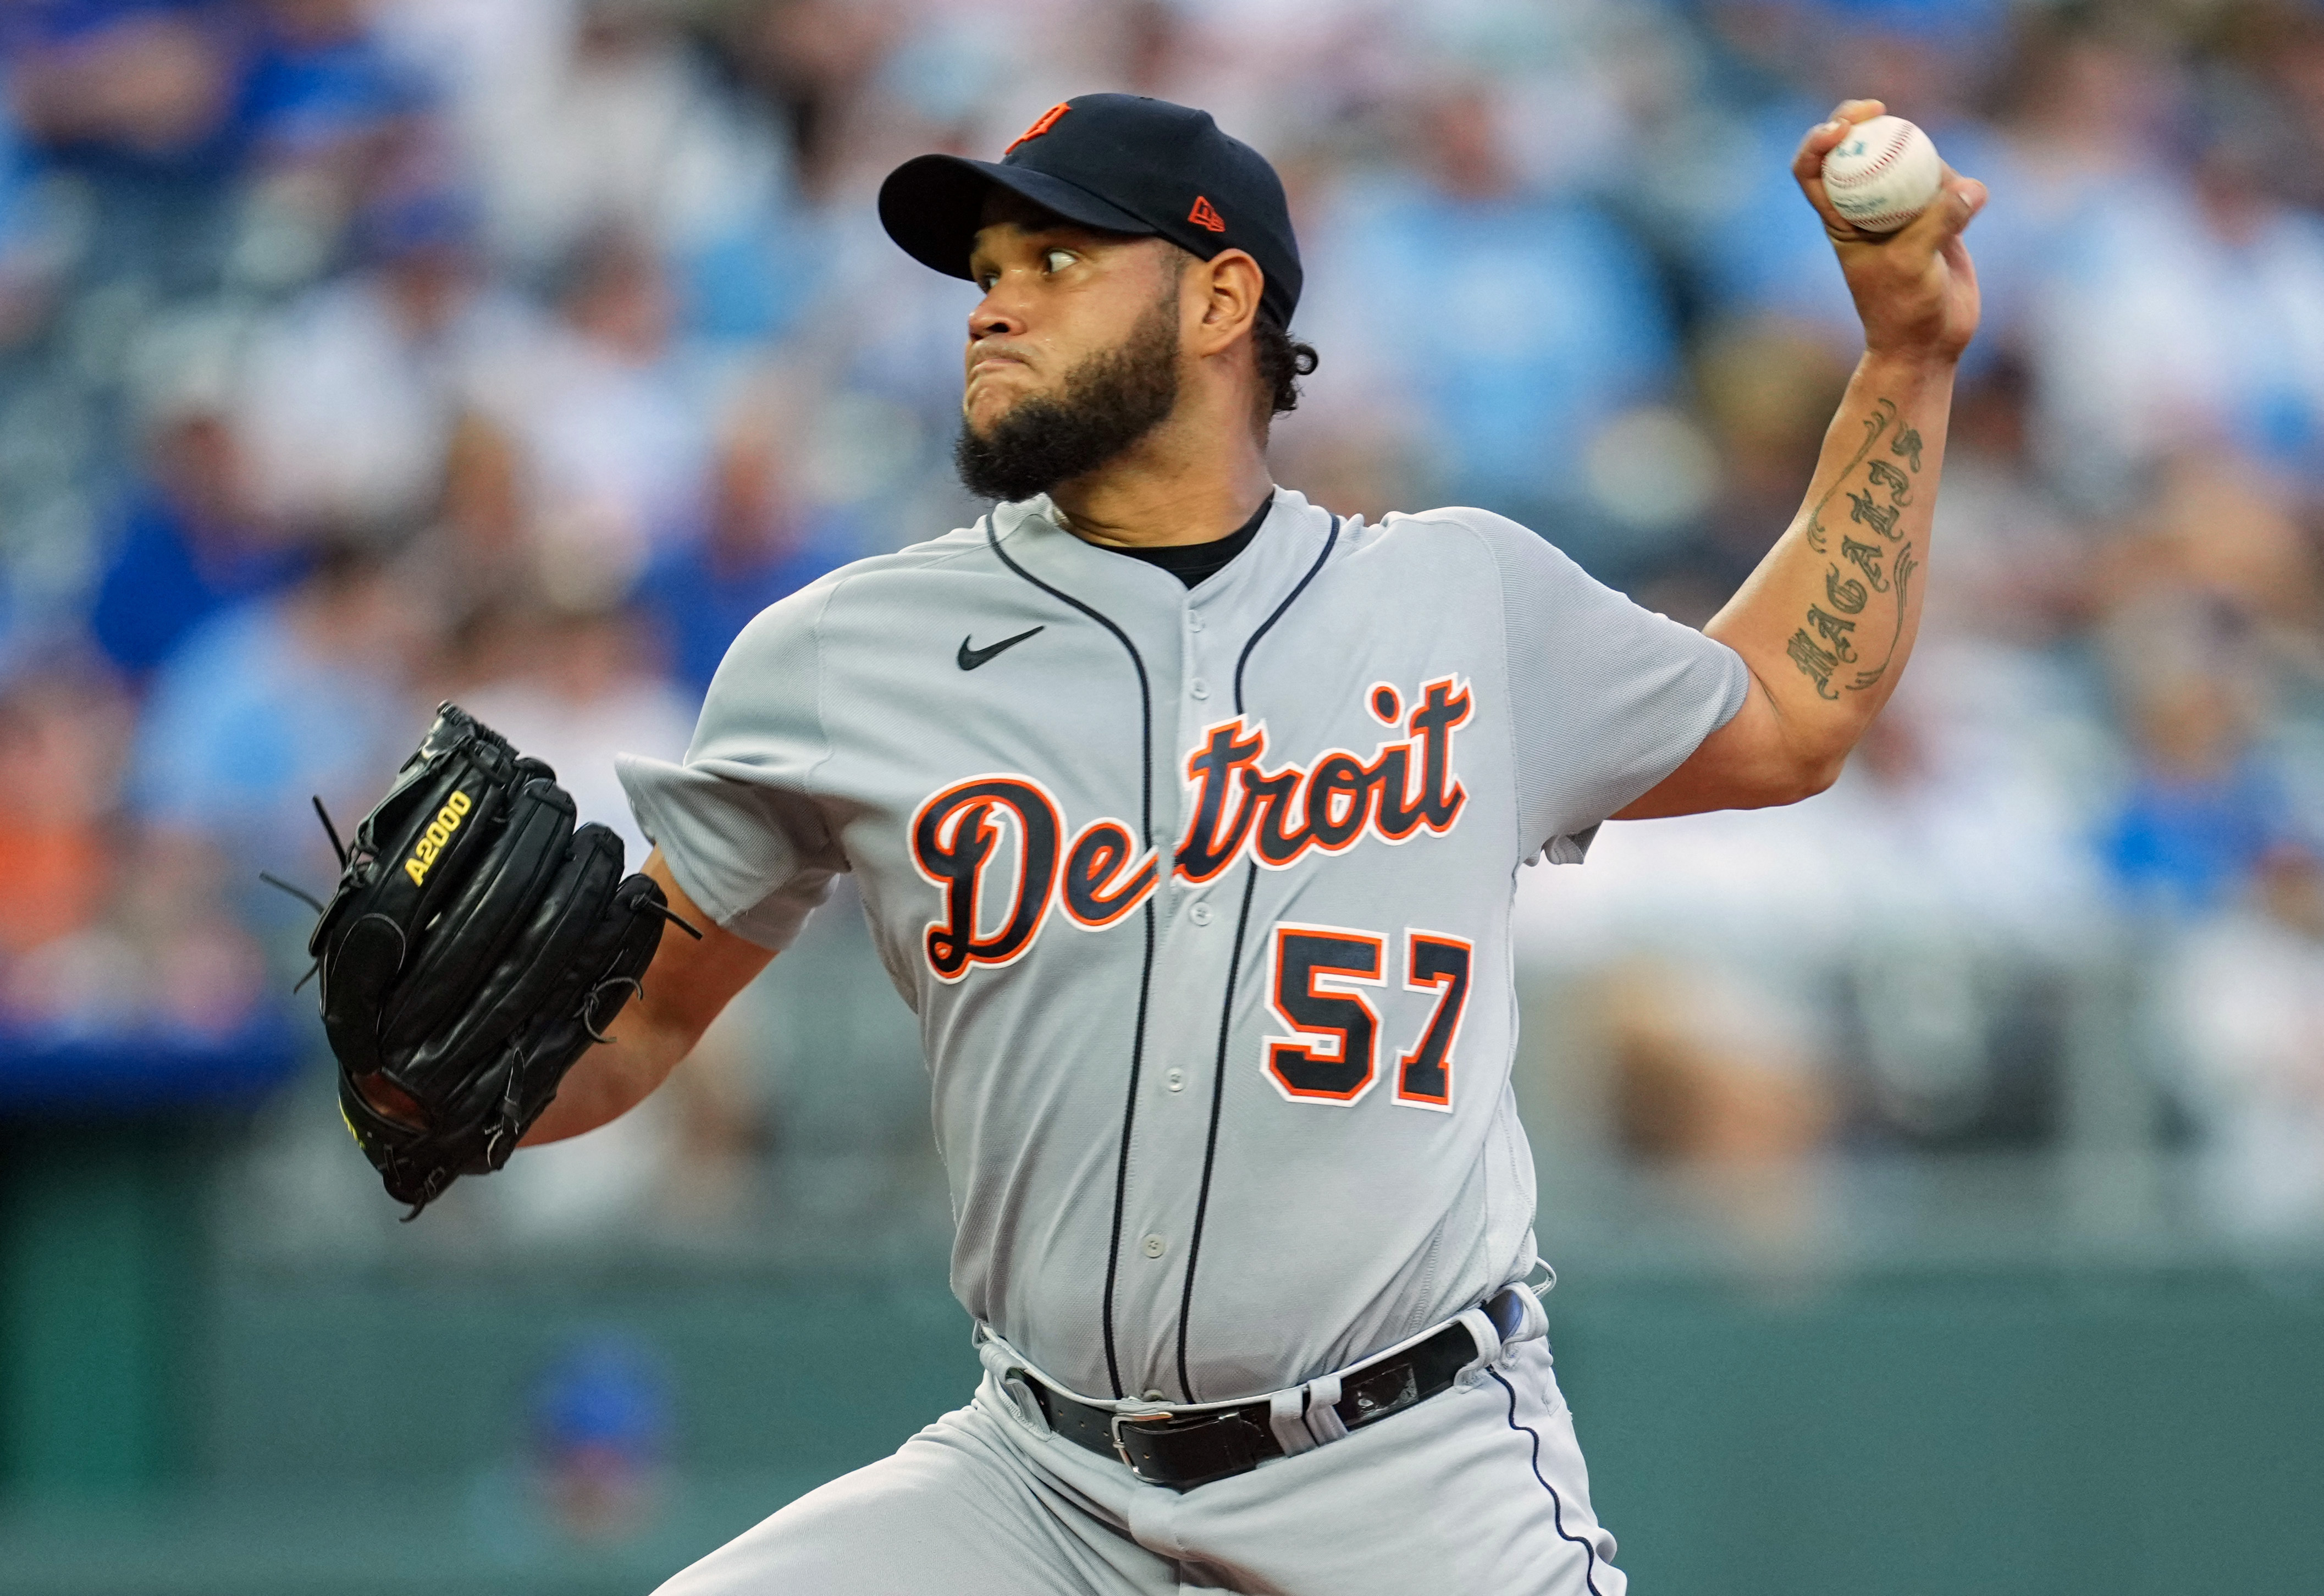 KANSAS CITY, MO - MAY 23: Detroit Tigers right fielder Matt